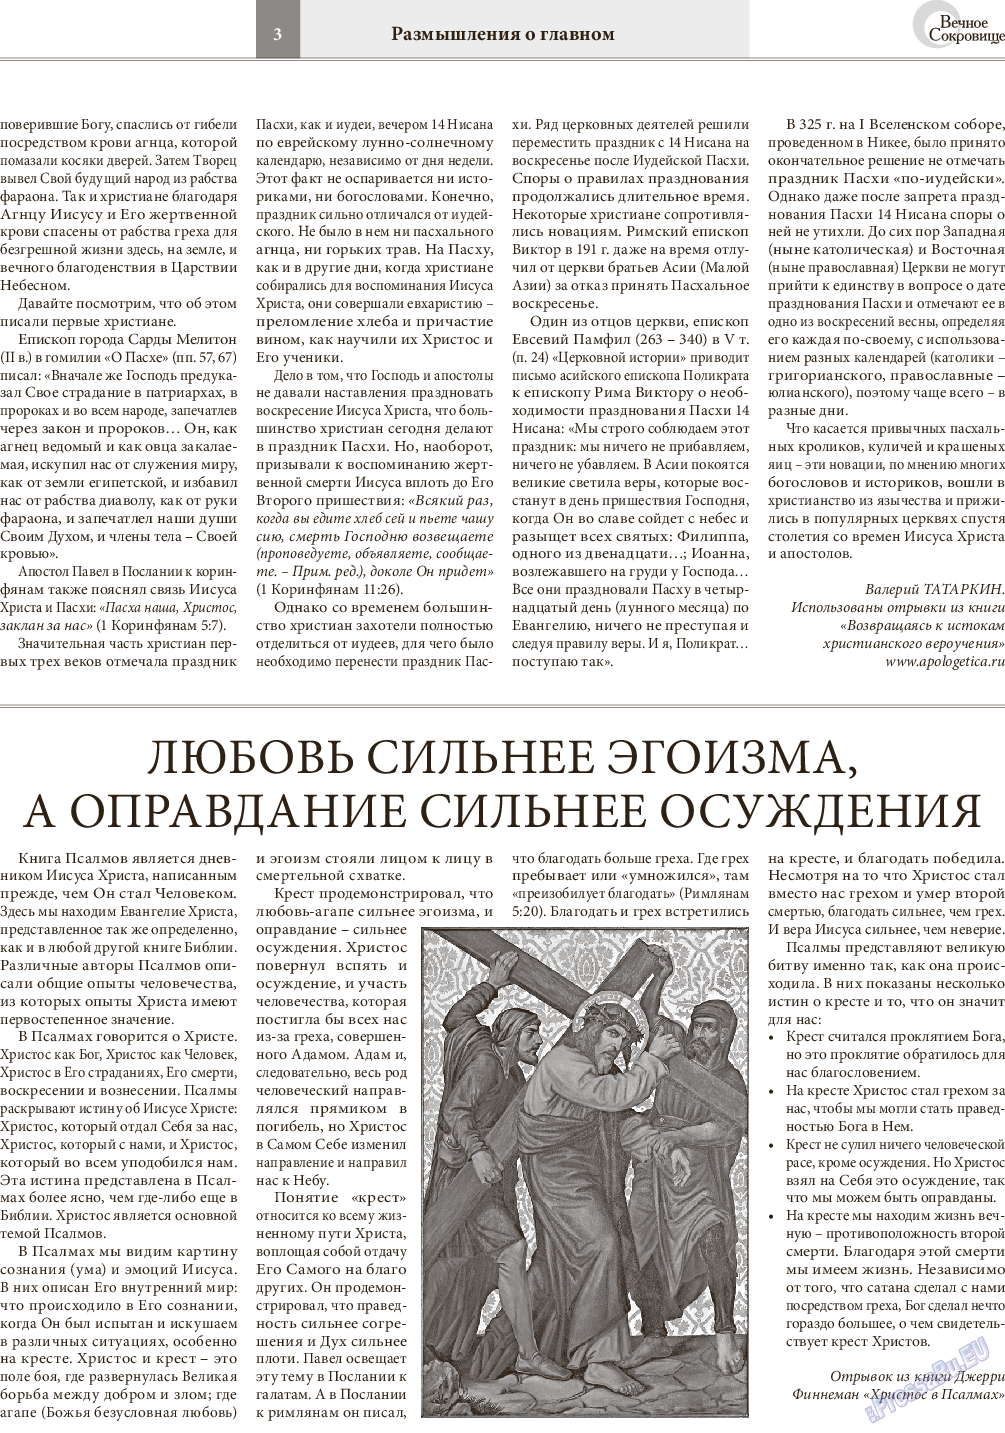 Вечное сокровище, газета. 2016 №2 стр.3